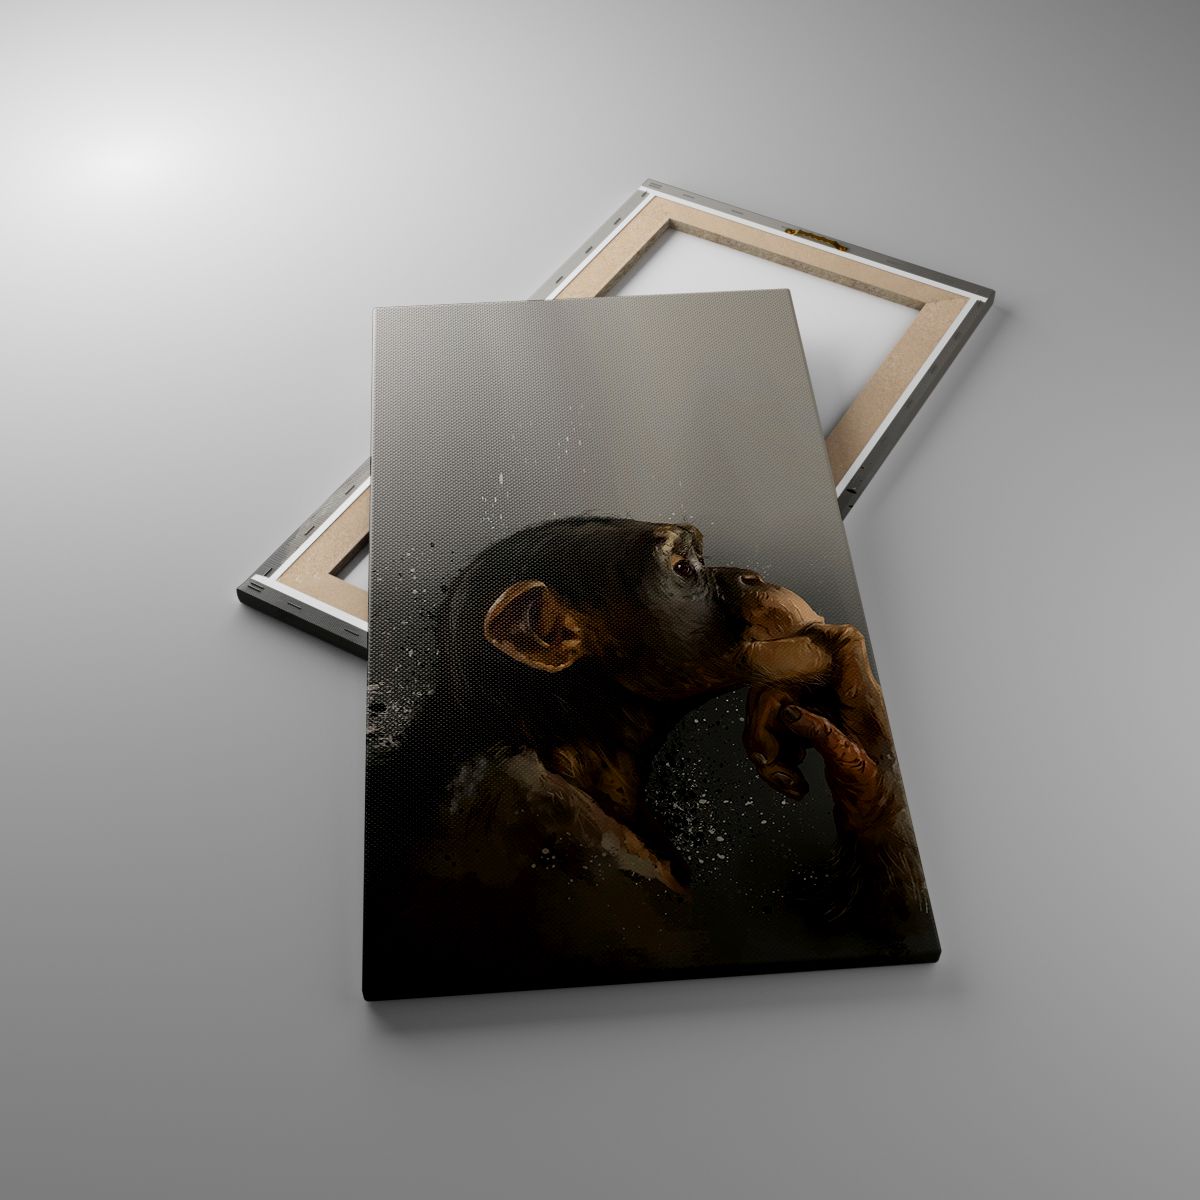 Leinwandbild Tiere, Leinwandbild Affe, Leinwandbild Kunst, Leinwandbild Schimpanse, Leinwandbild Abstraktion